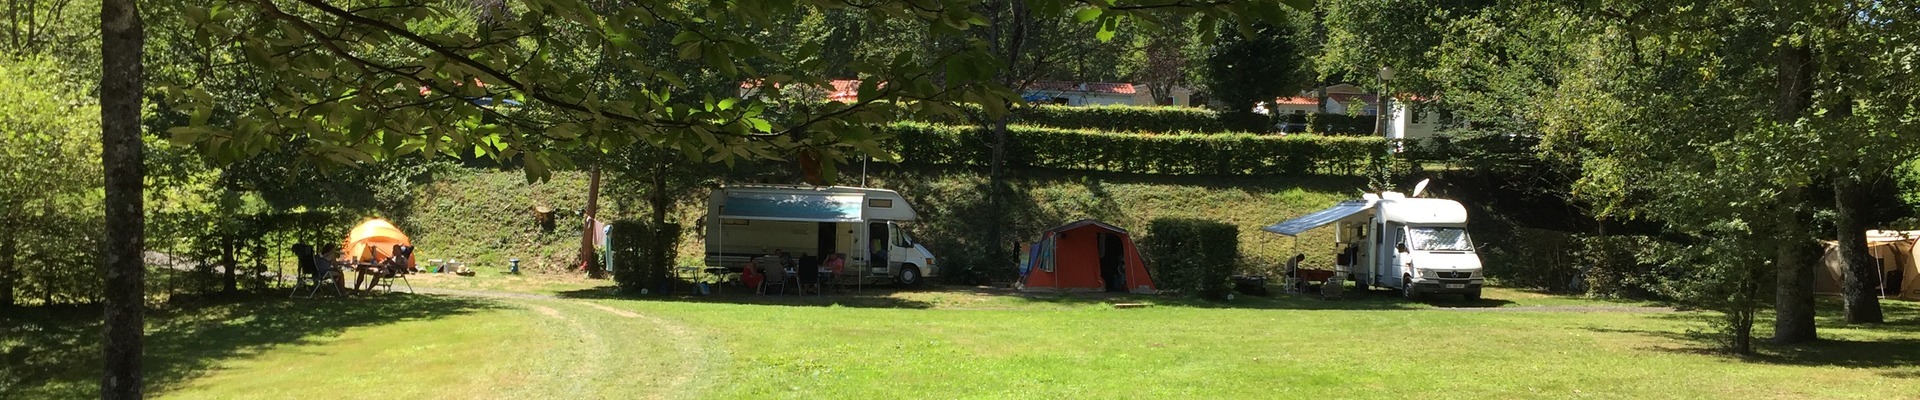 Camping dans le Cantal en Auvergne au bord du lac